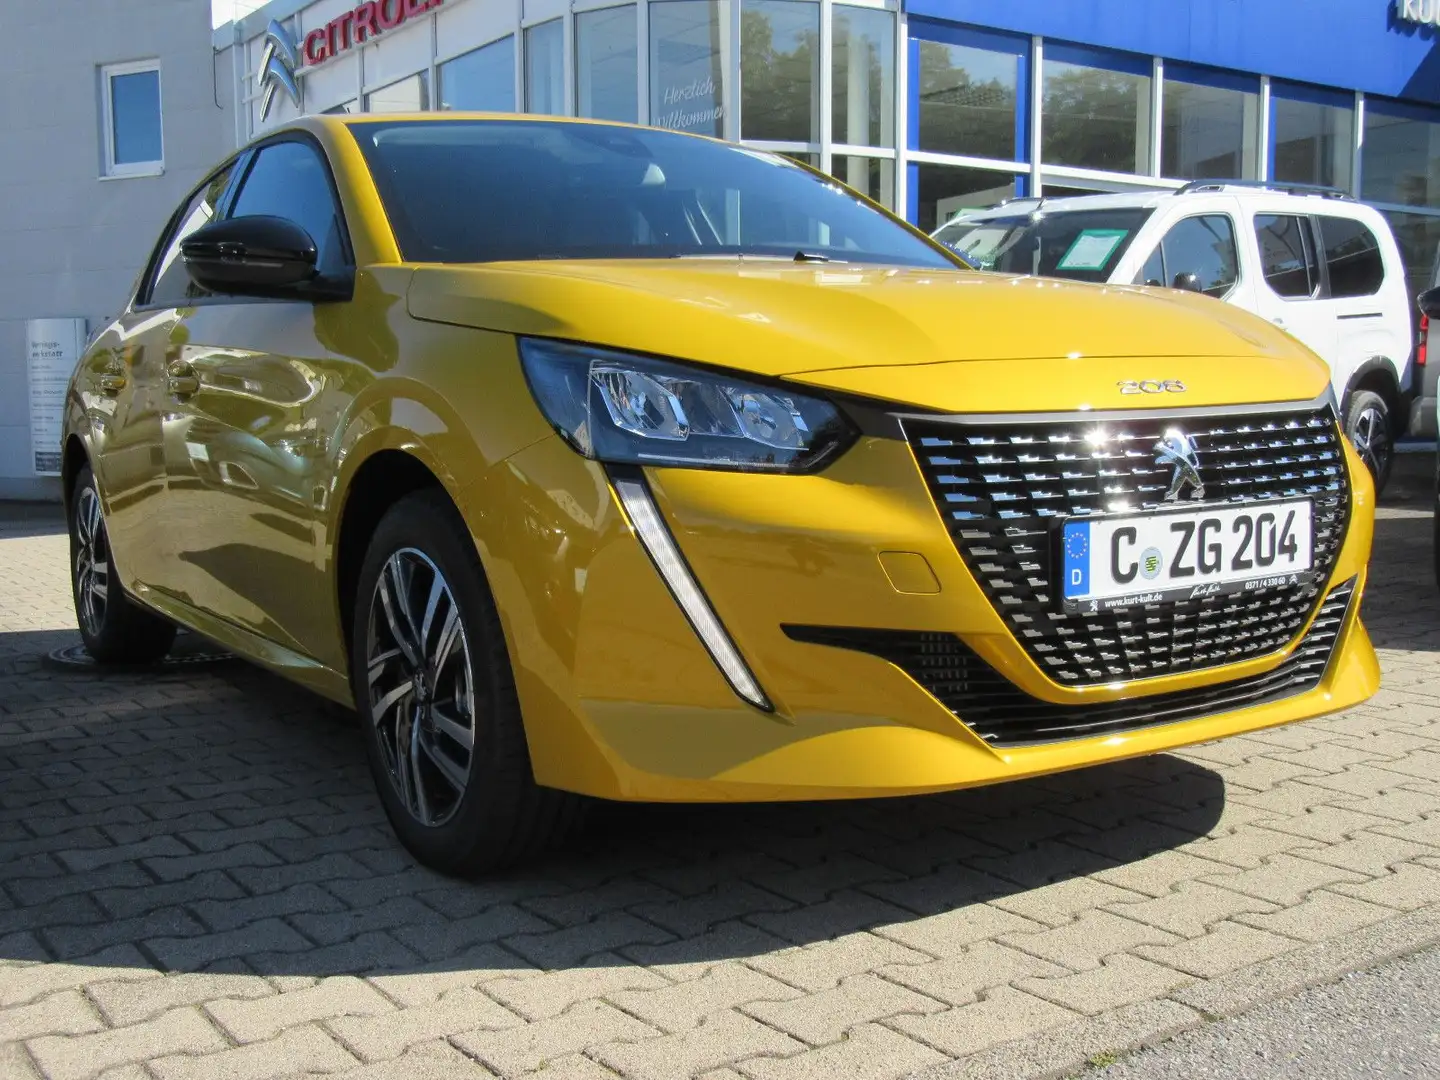 Peugeot 208 Kleinwagen in Gelb vorführfahrzeug in Chemnitz für